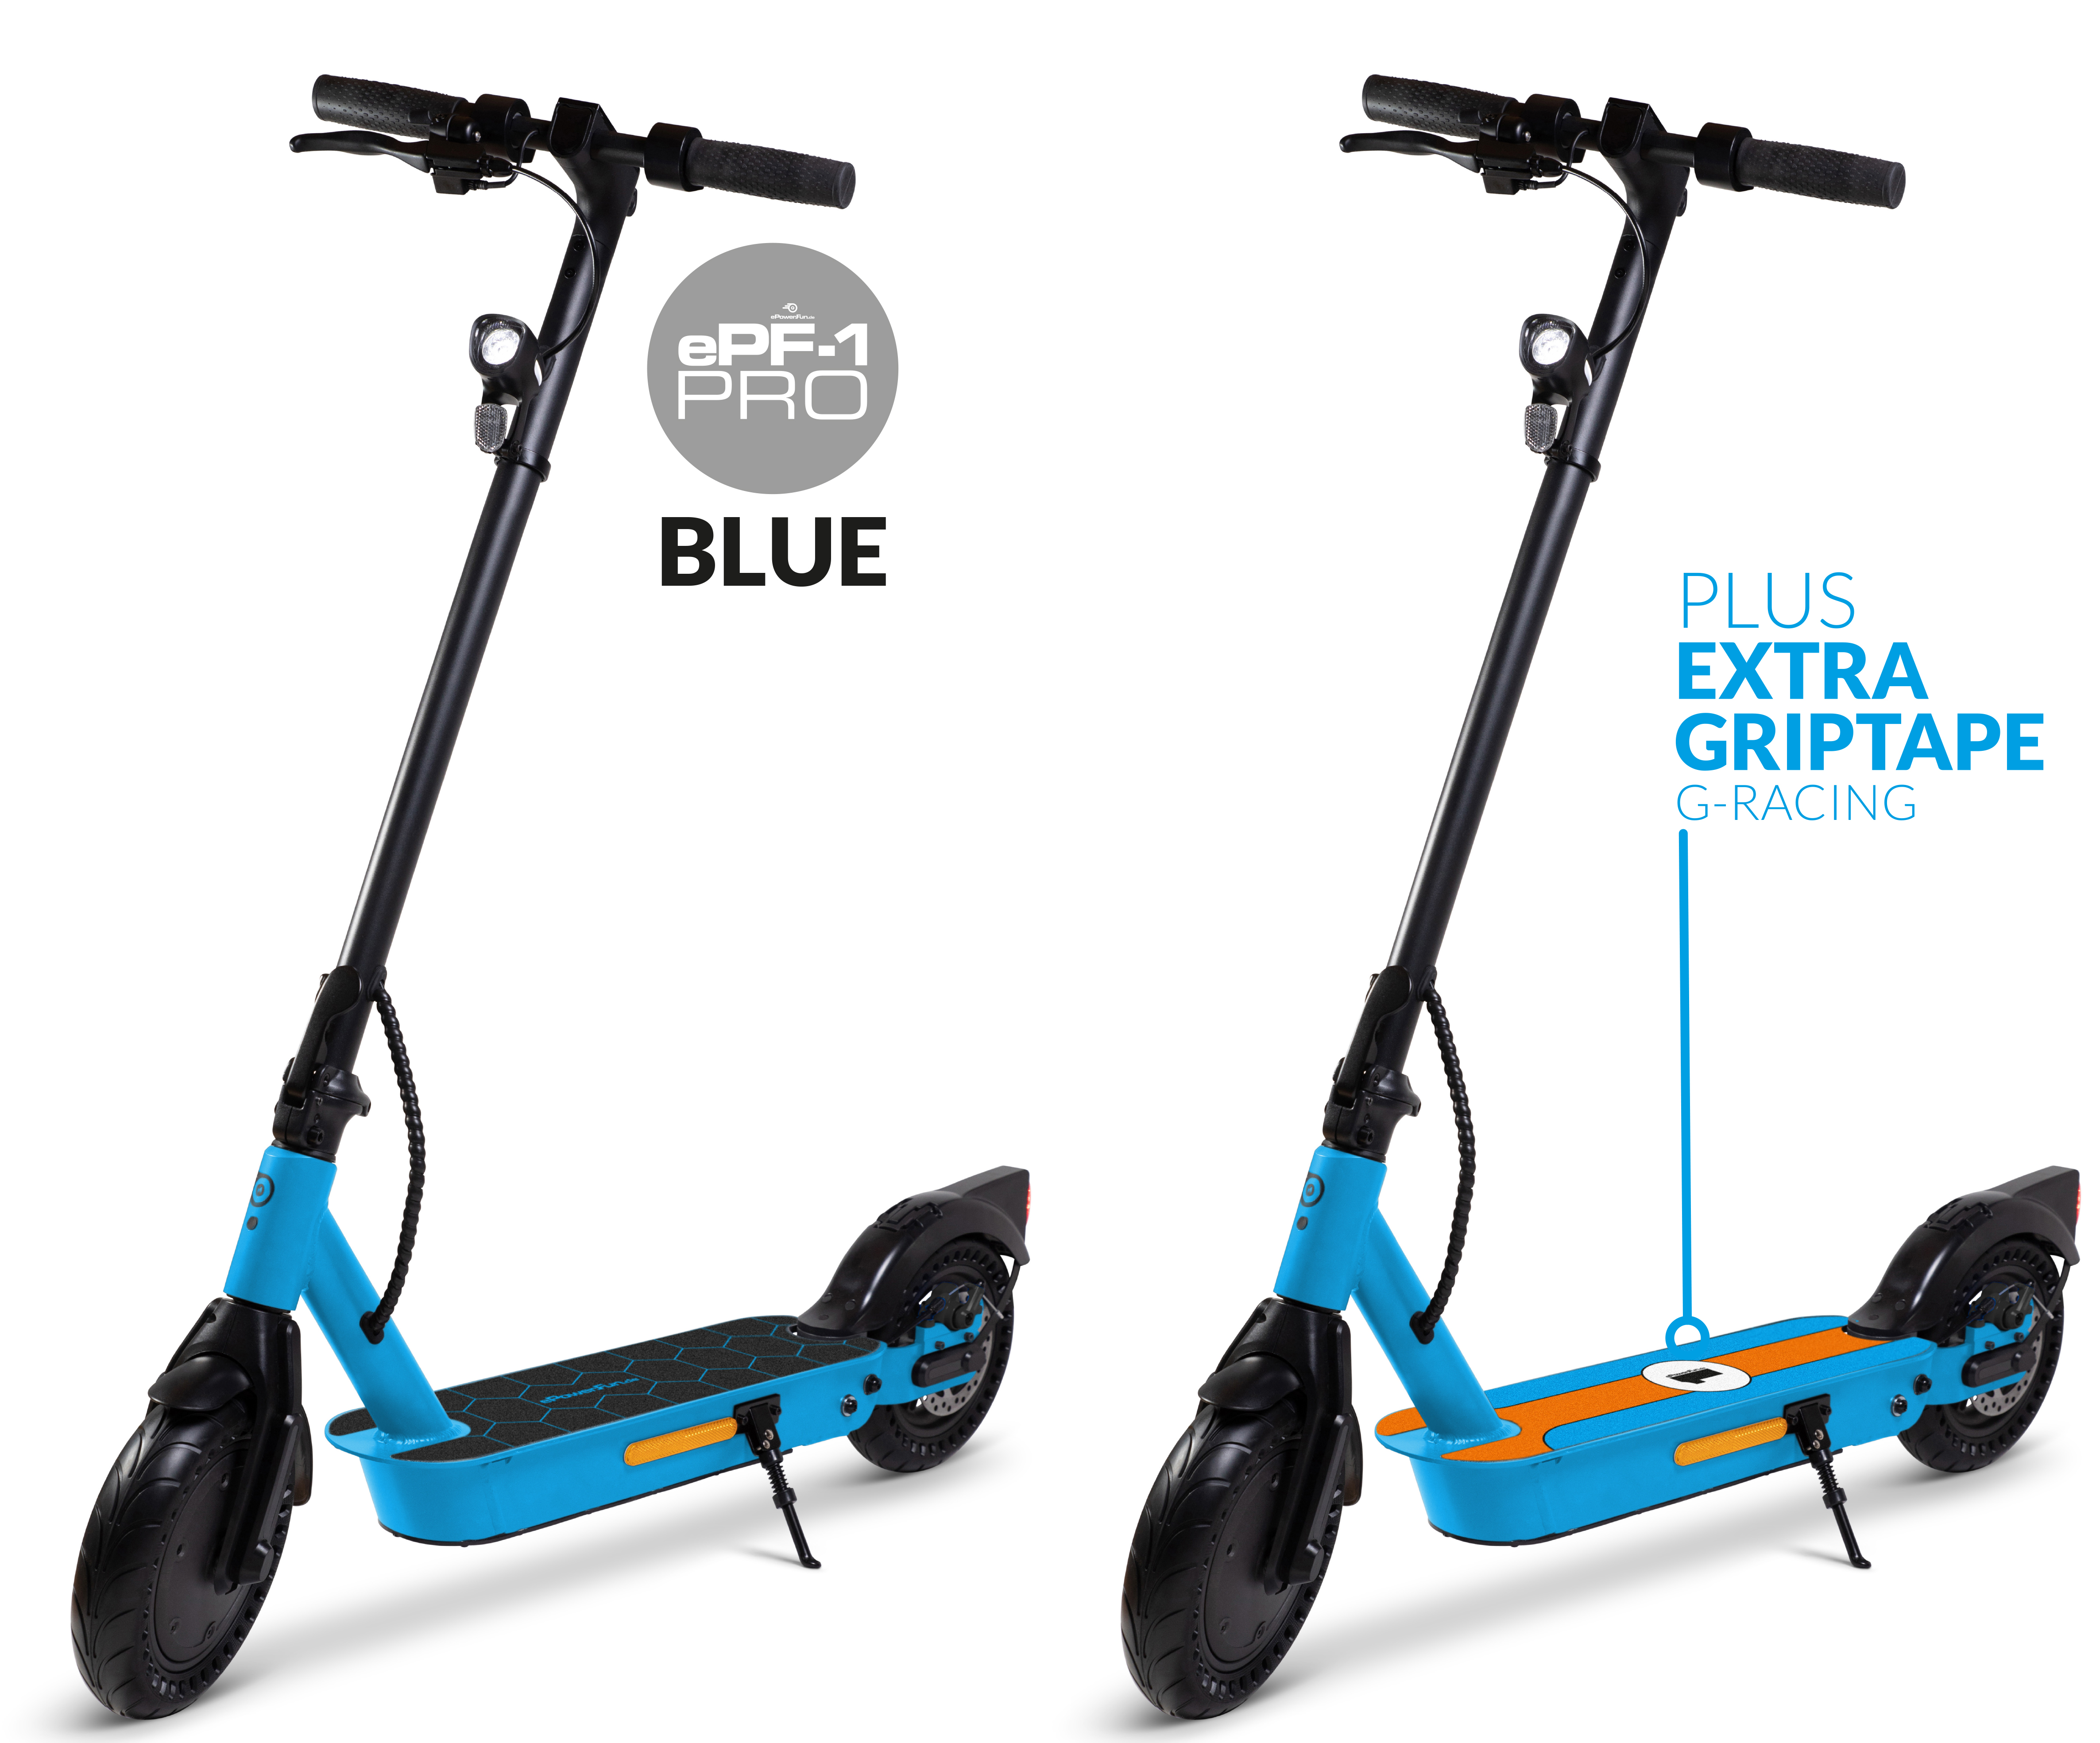 Vorbestellung - ePF-1 PRO Blue eScooter mit Straßenzulassung